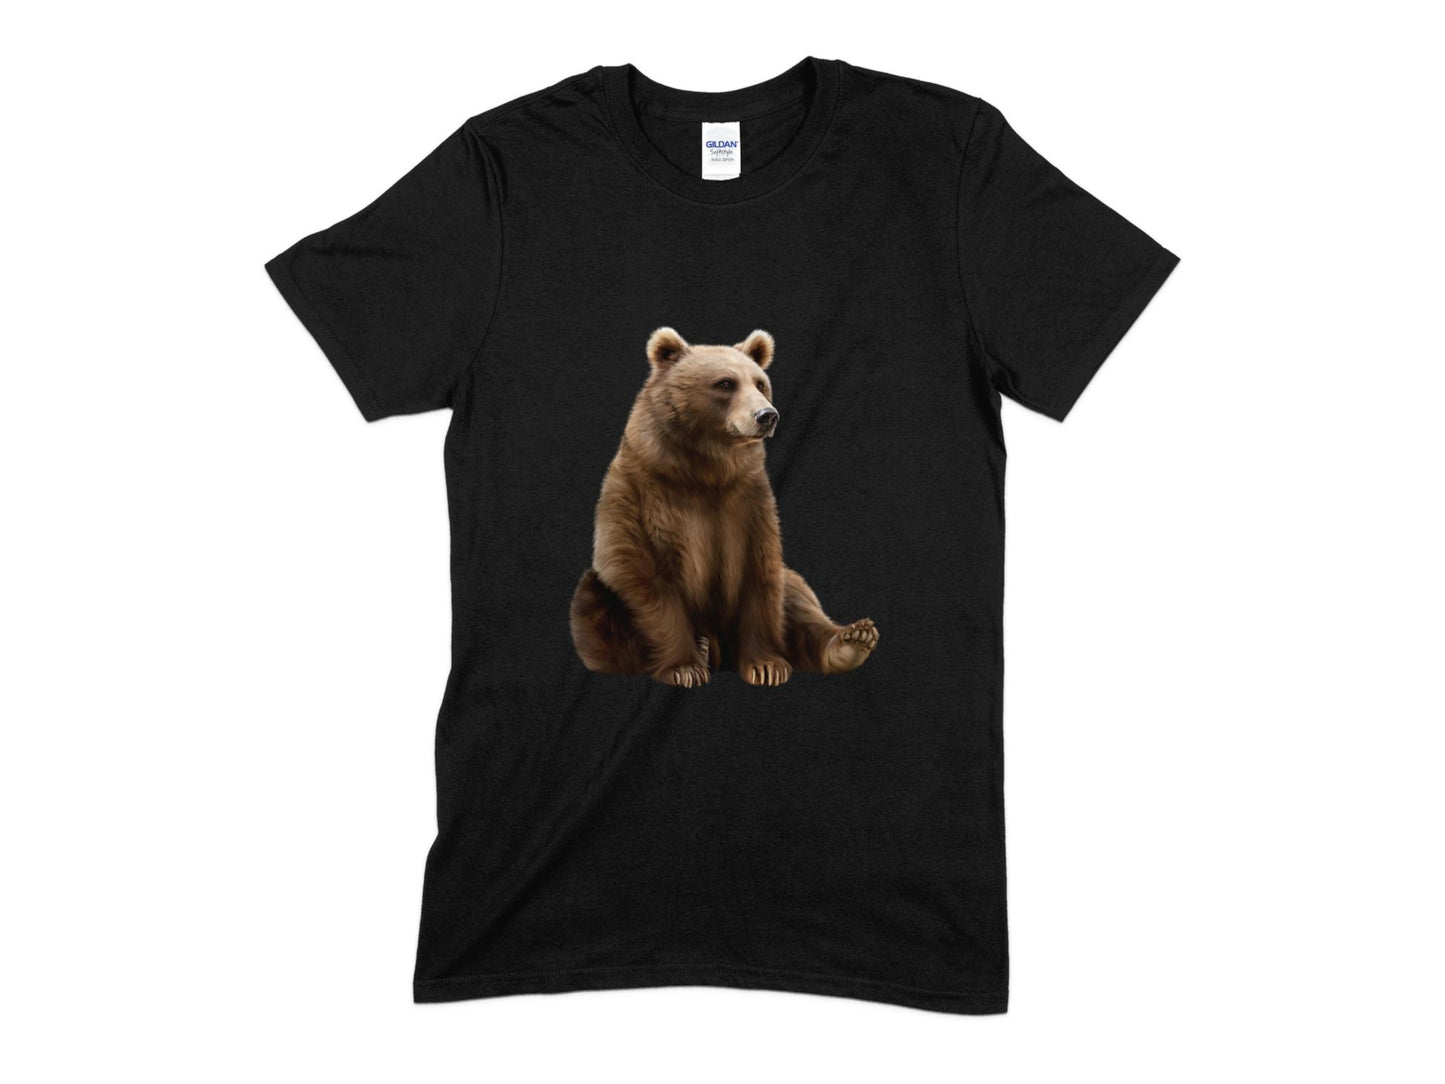 Big Bear T-Shirt, Cute Bear T-Shirt